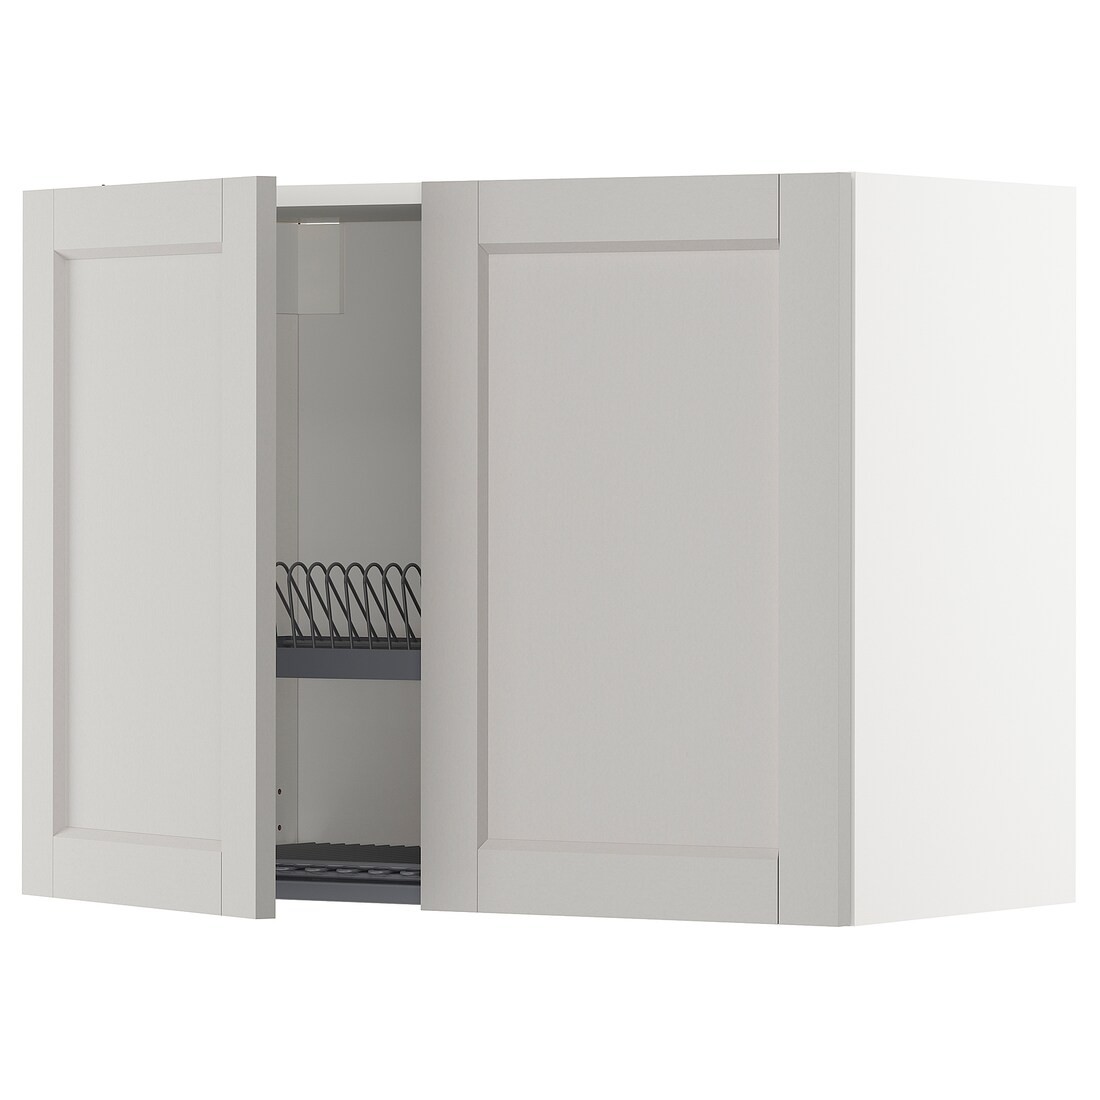 METOD МЕТОД Навесной шкаф с посудной сушилкой / 2 дверцы, белый / Lerhyttan светло-серый, 80x60 см